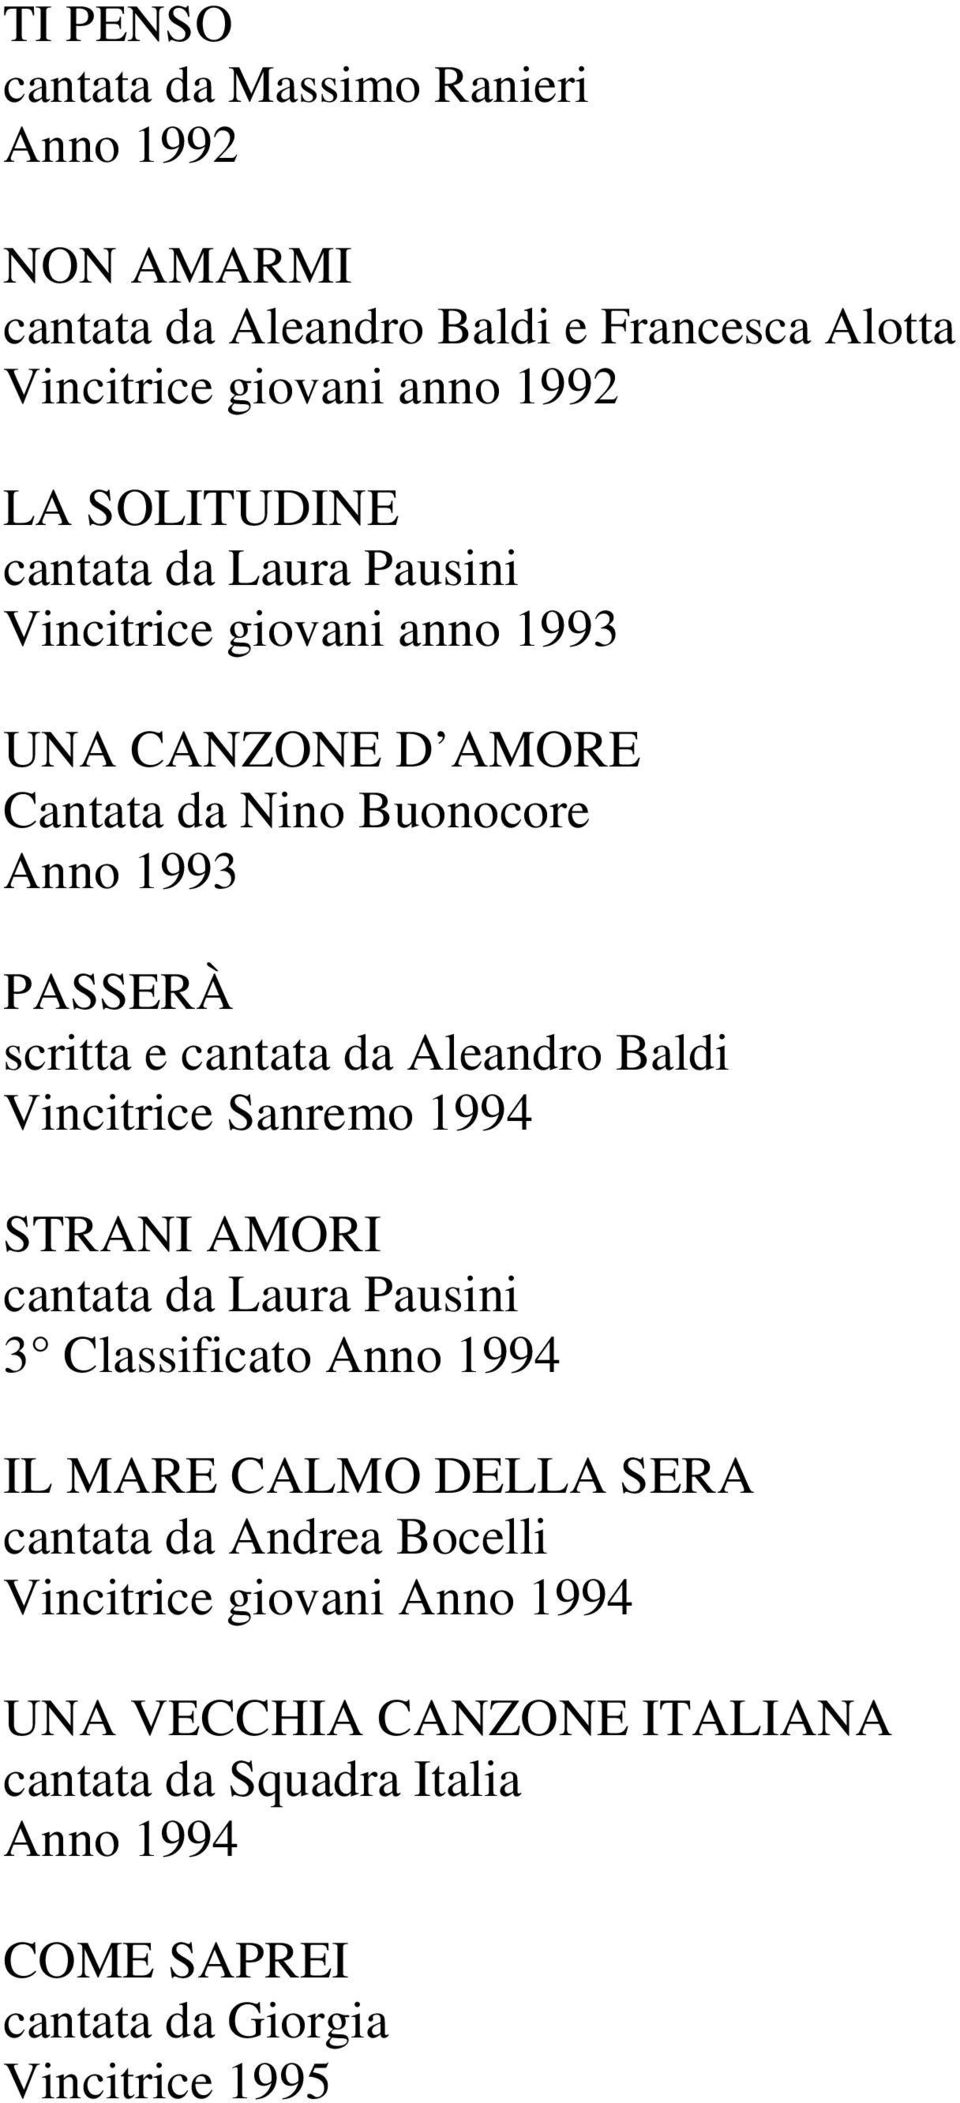 Aleandro Baldi Vincitrice Sanremo 1994 STRANI AMORI cantata da Laura Pausini 3 Classificato Anno 1994 IL MARE CALMO DELLA SERA cantata da Andrea